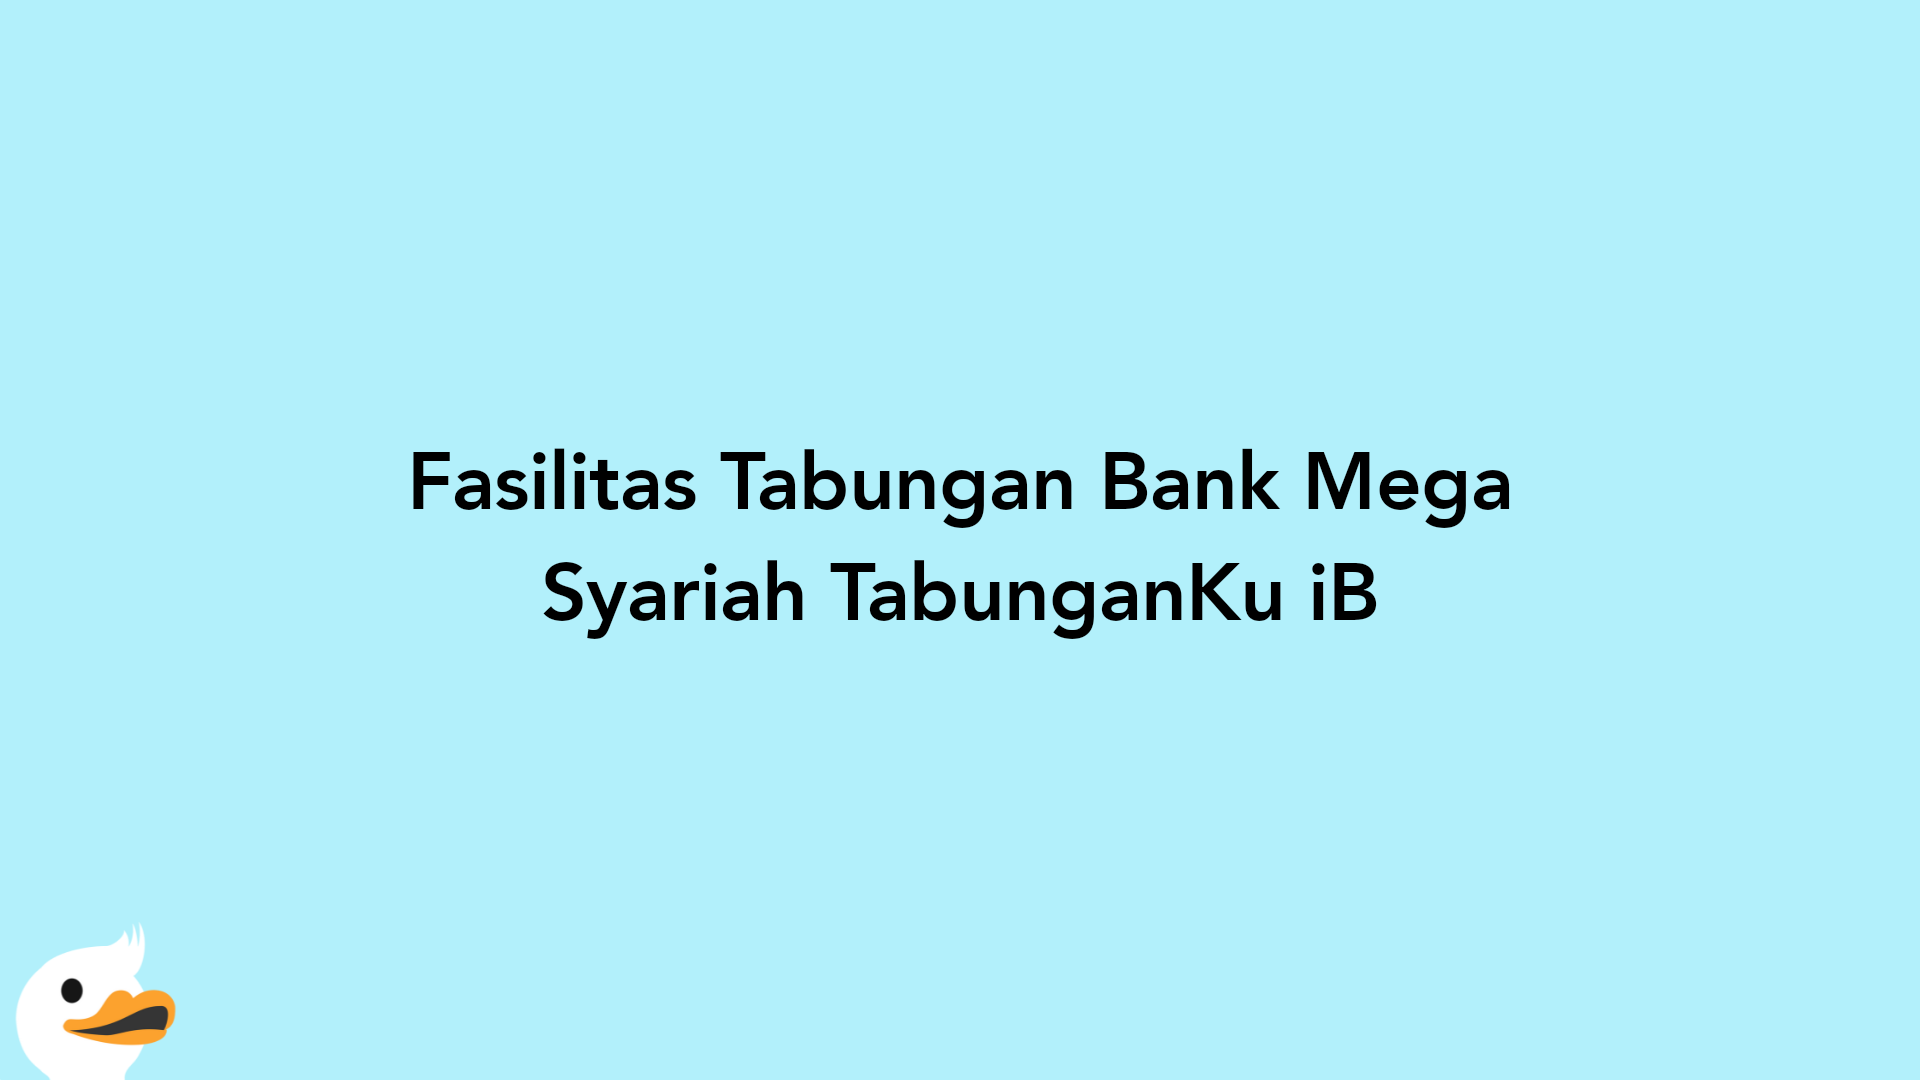 Fasilitas Tabungan Bank Mega Syariah TabunganKu iB